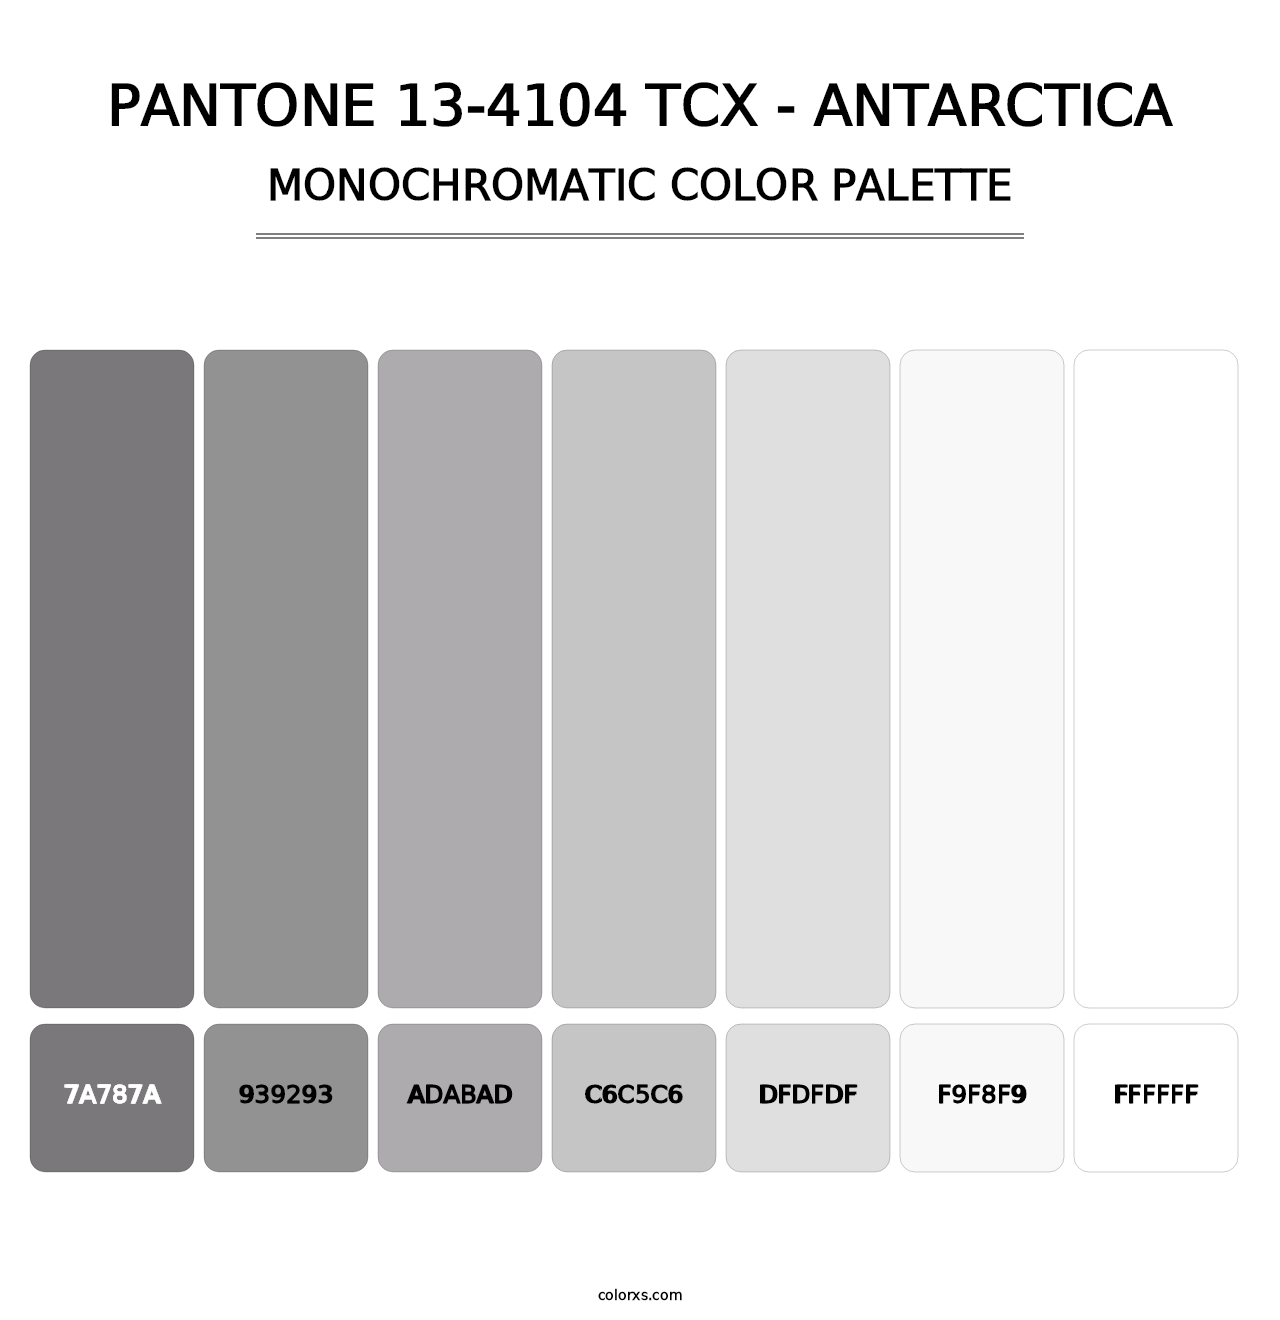 PANTONE 13-4104 TCX - Antarctica - Monochromatic Color Palette